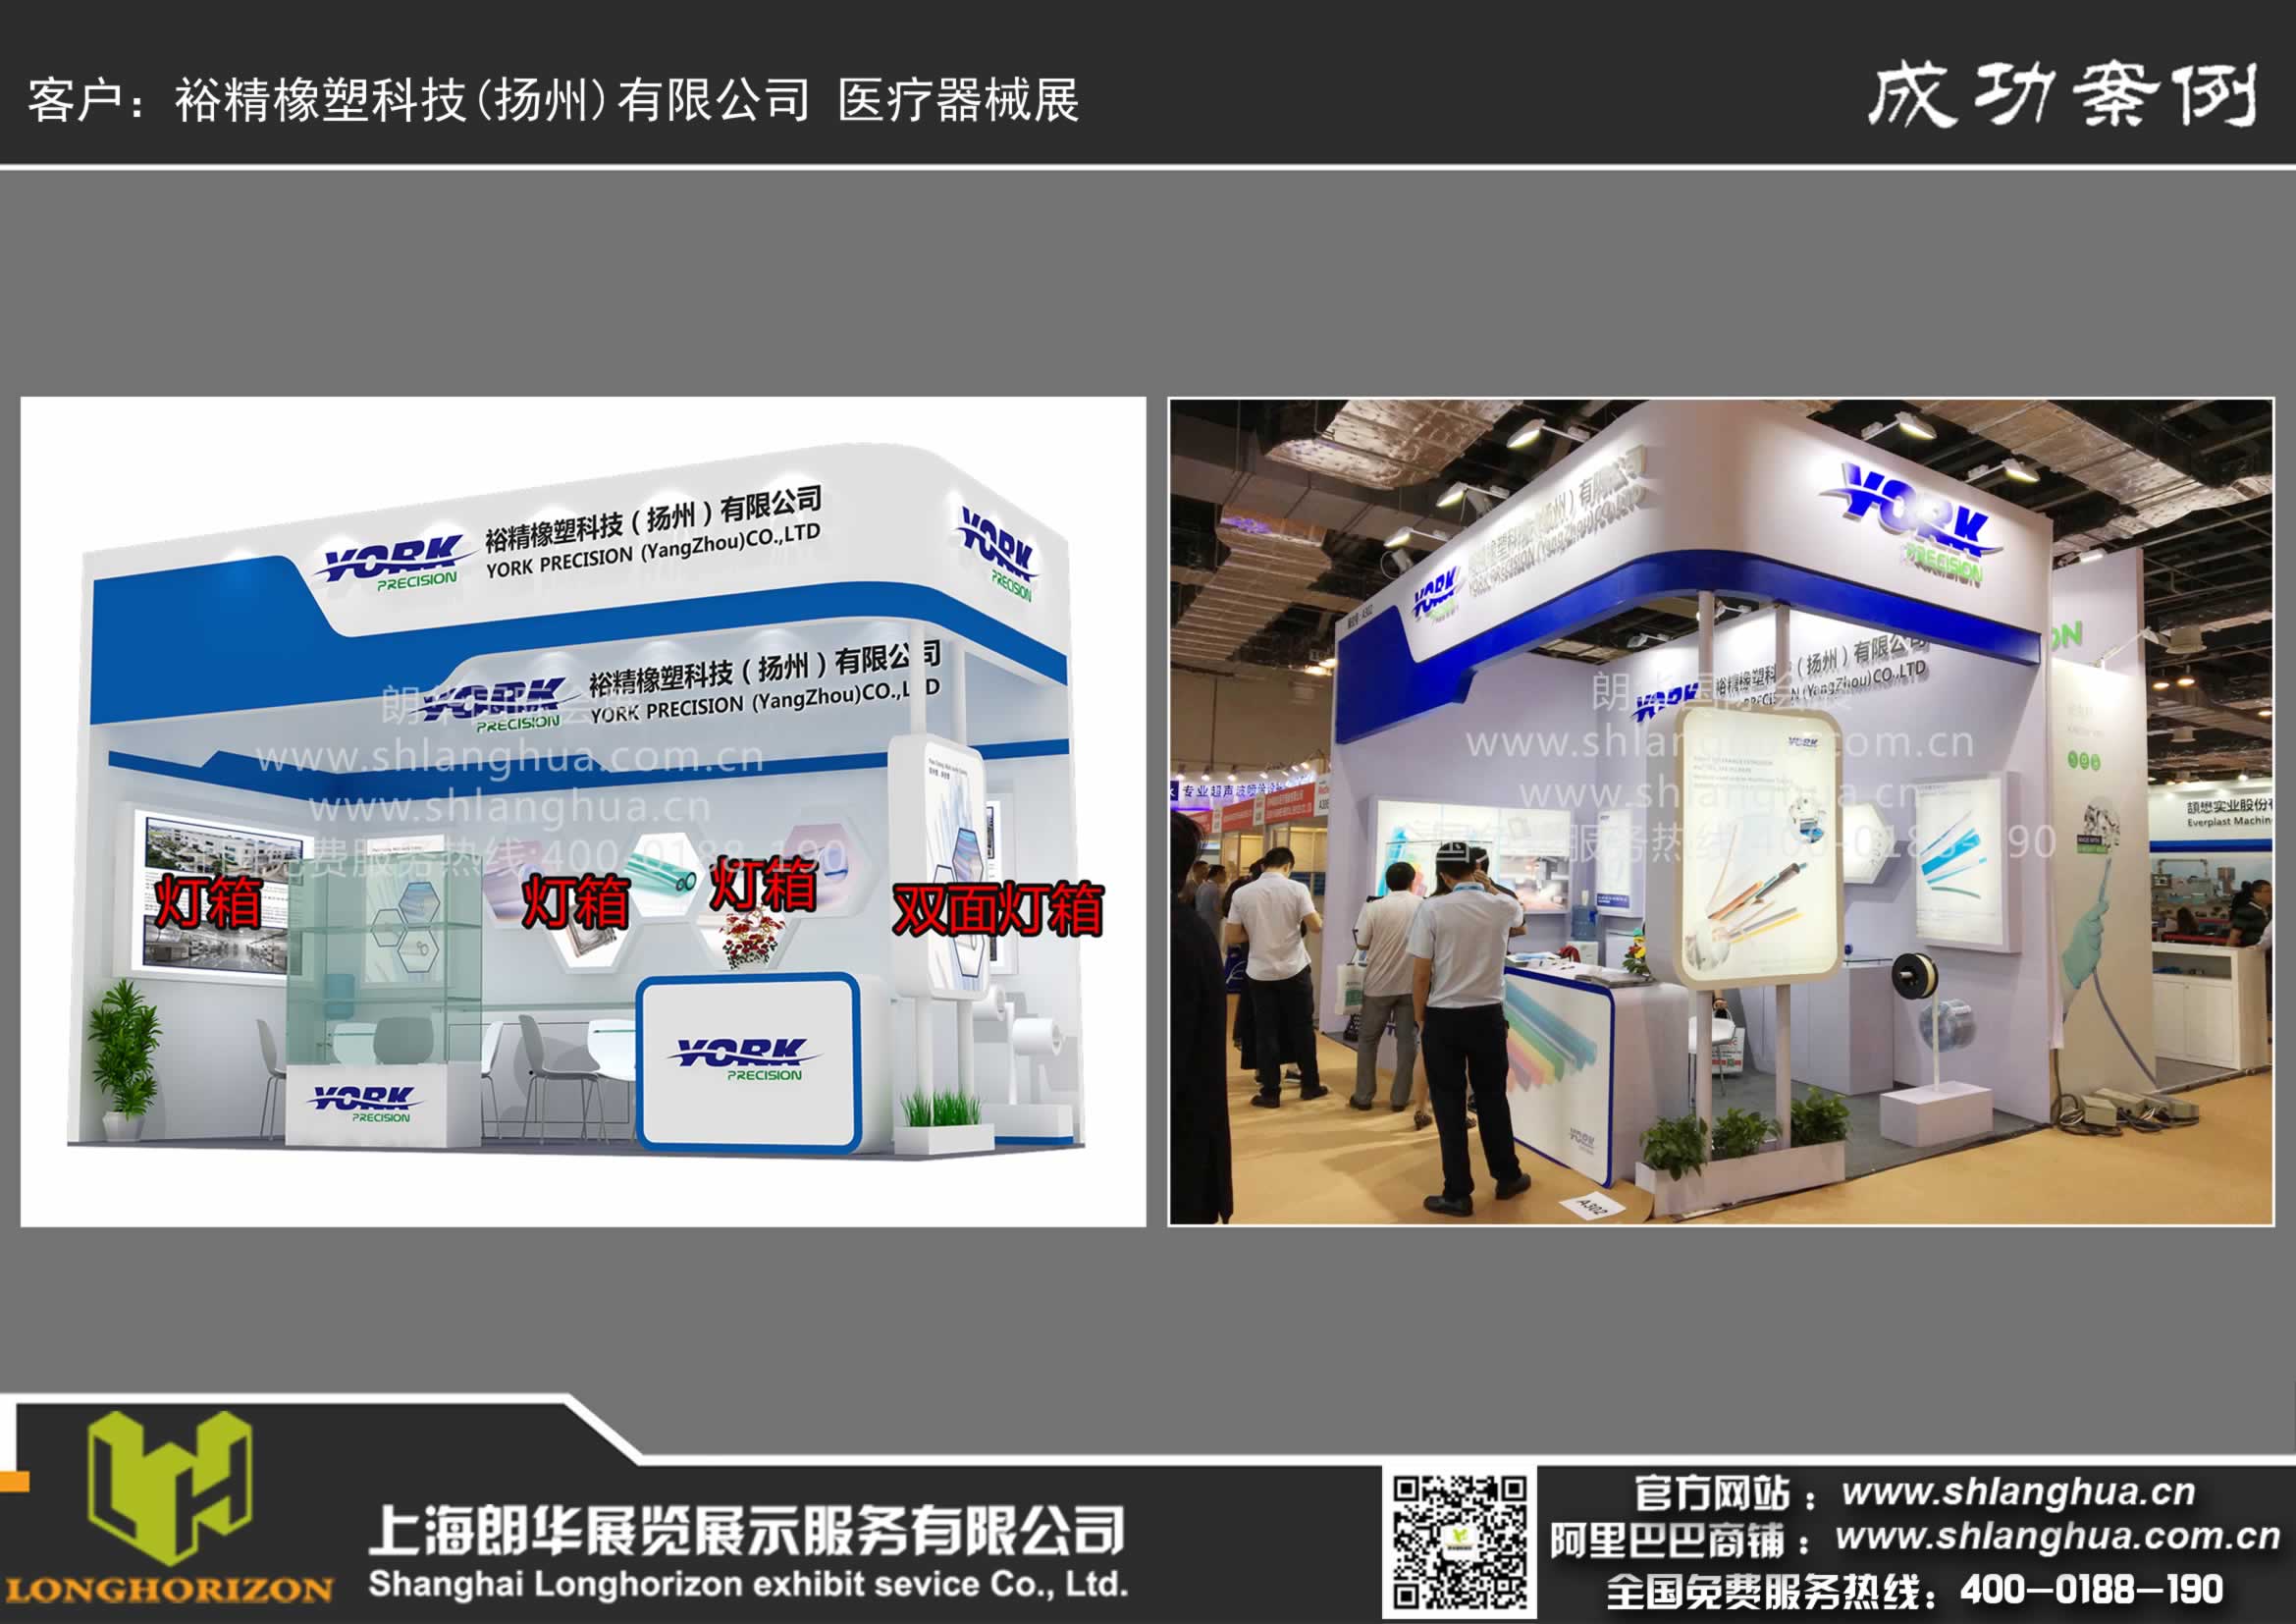 裕精橡塑科技(扬州)有限公司 医疗器械展